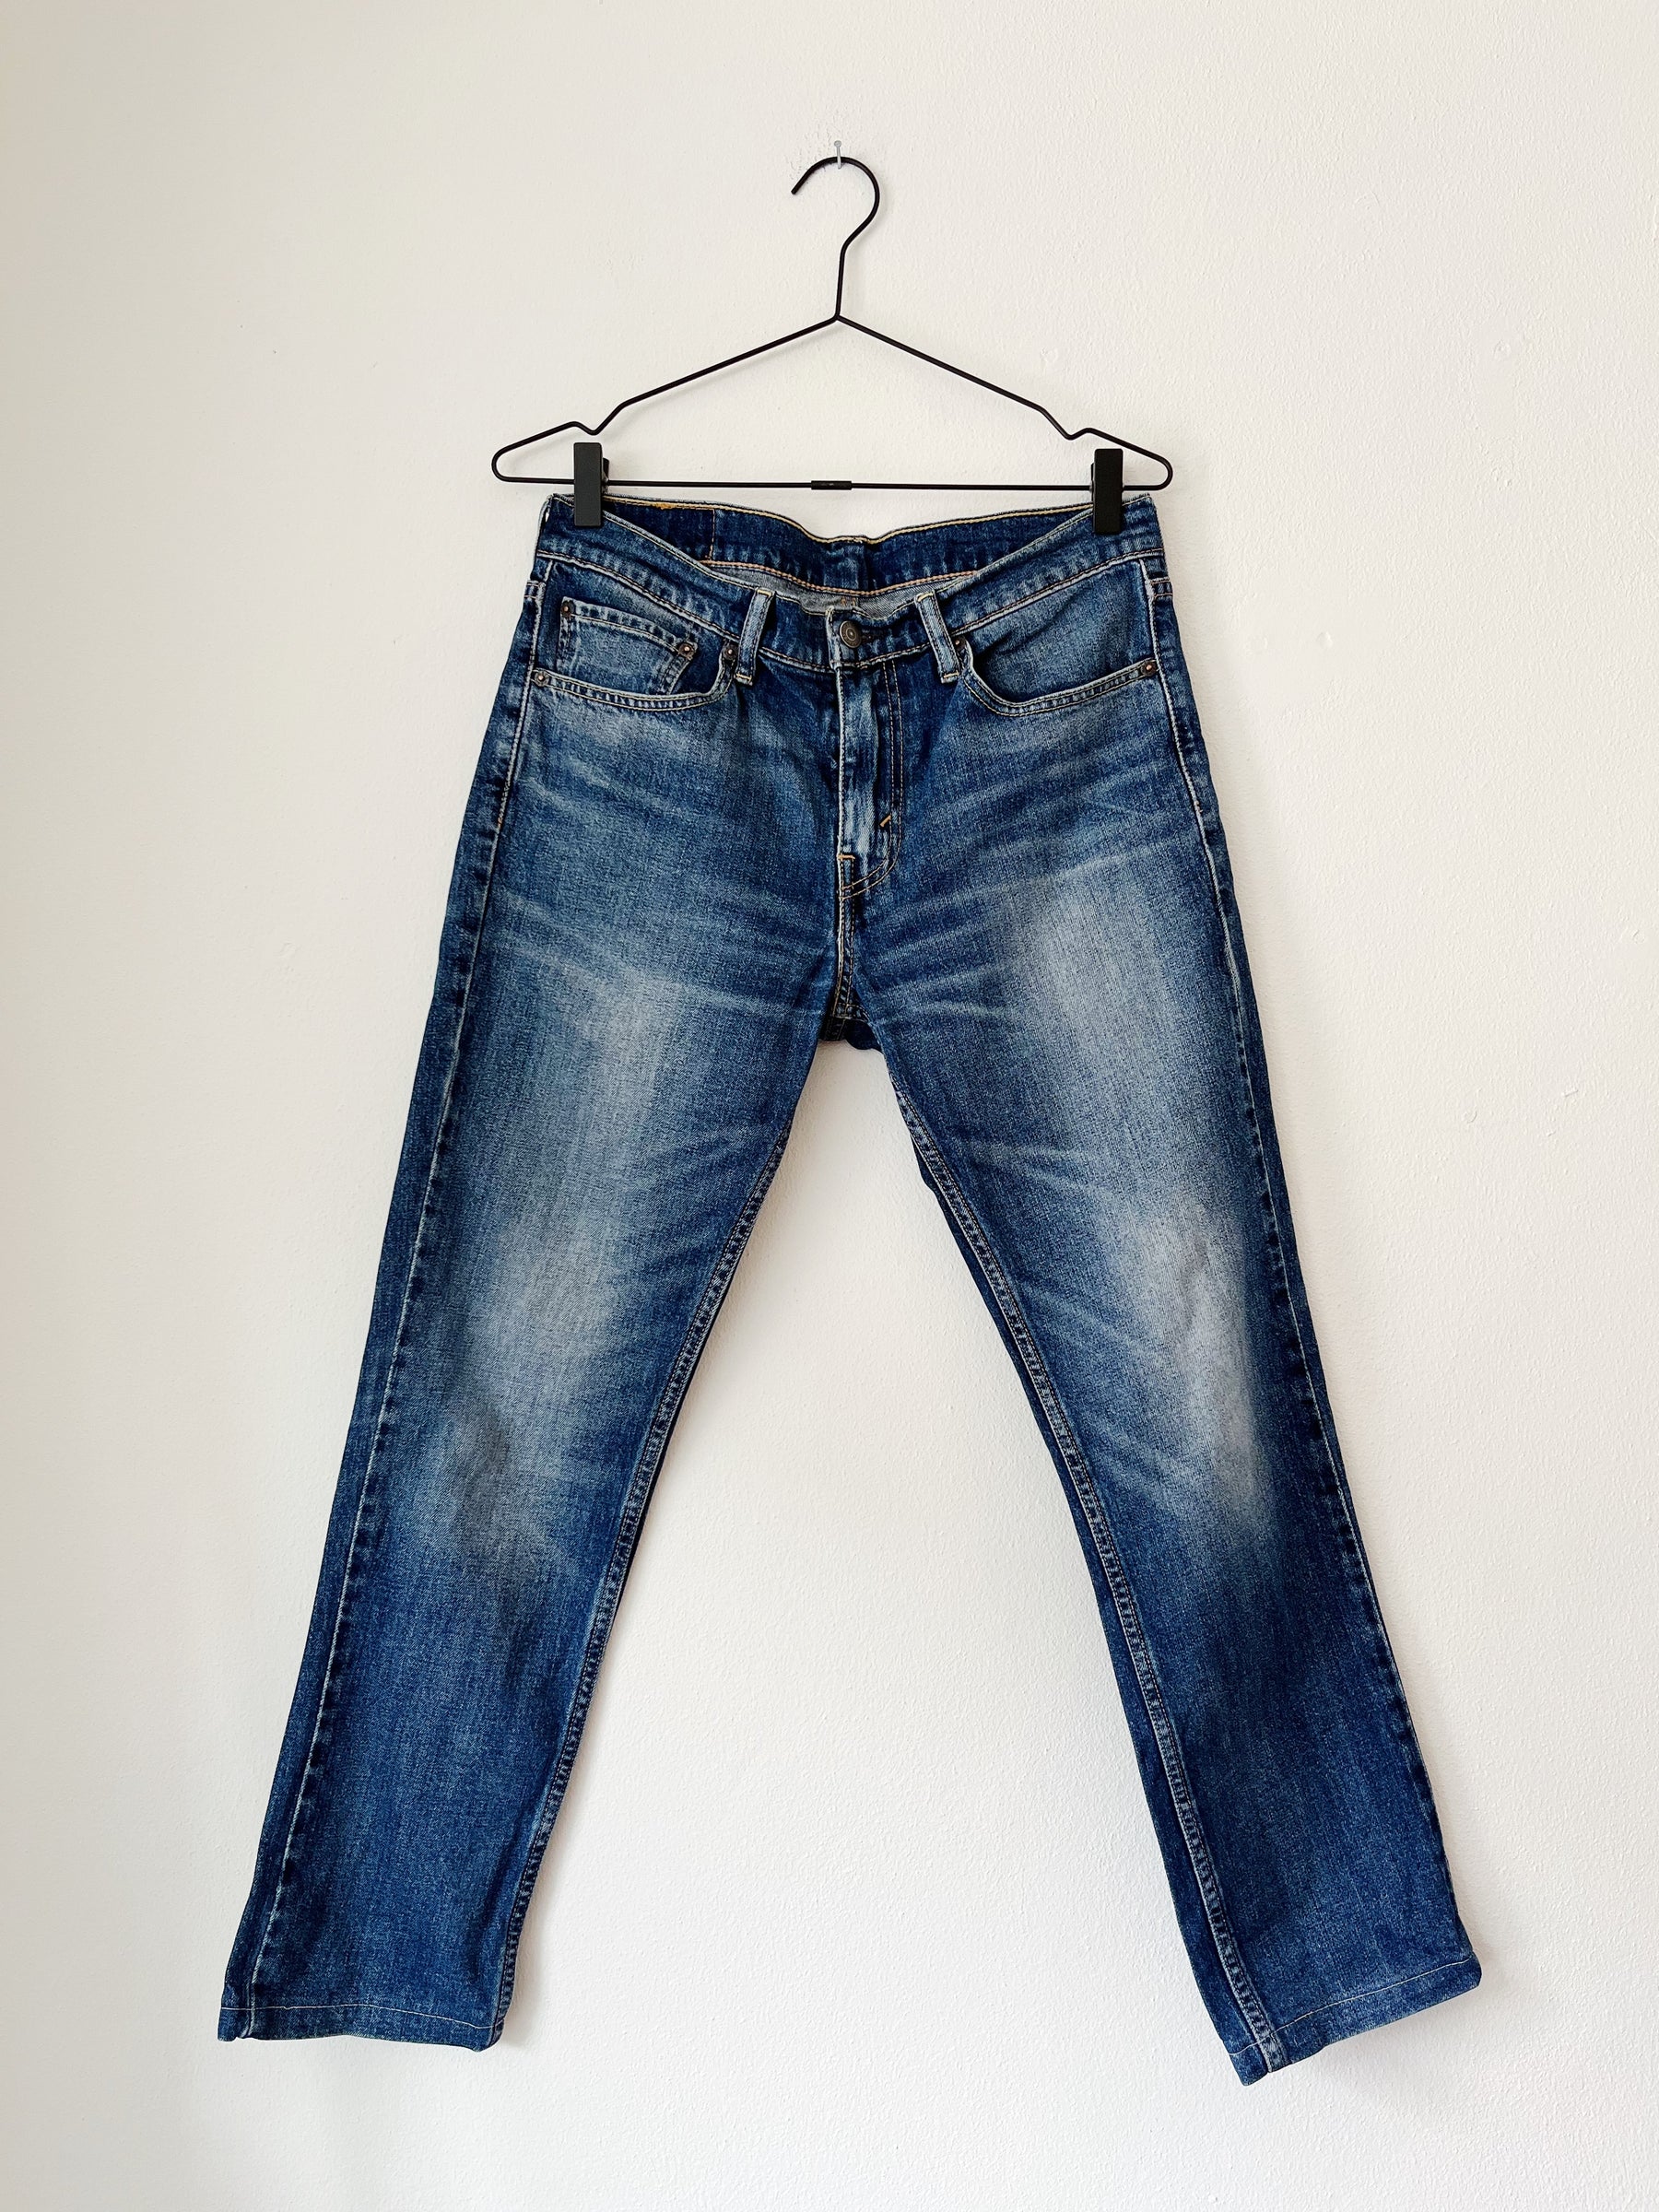 511 Levis jeans